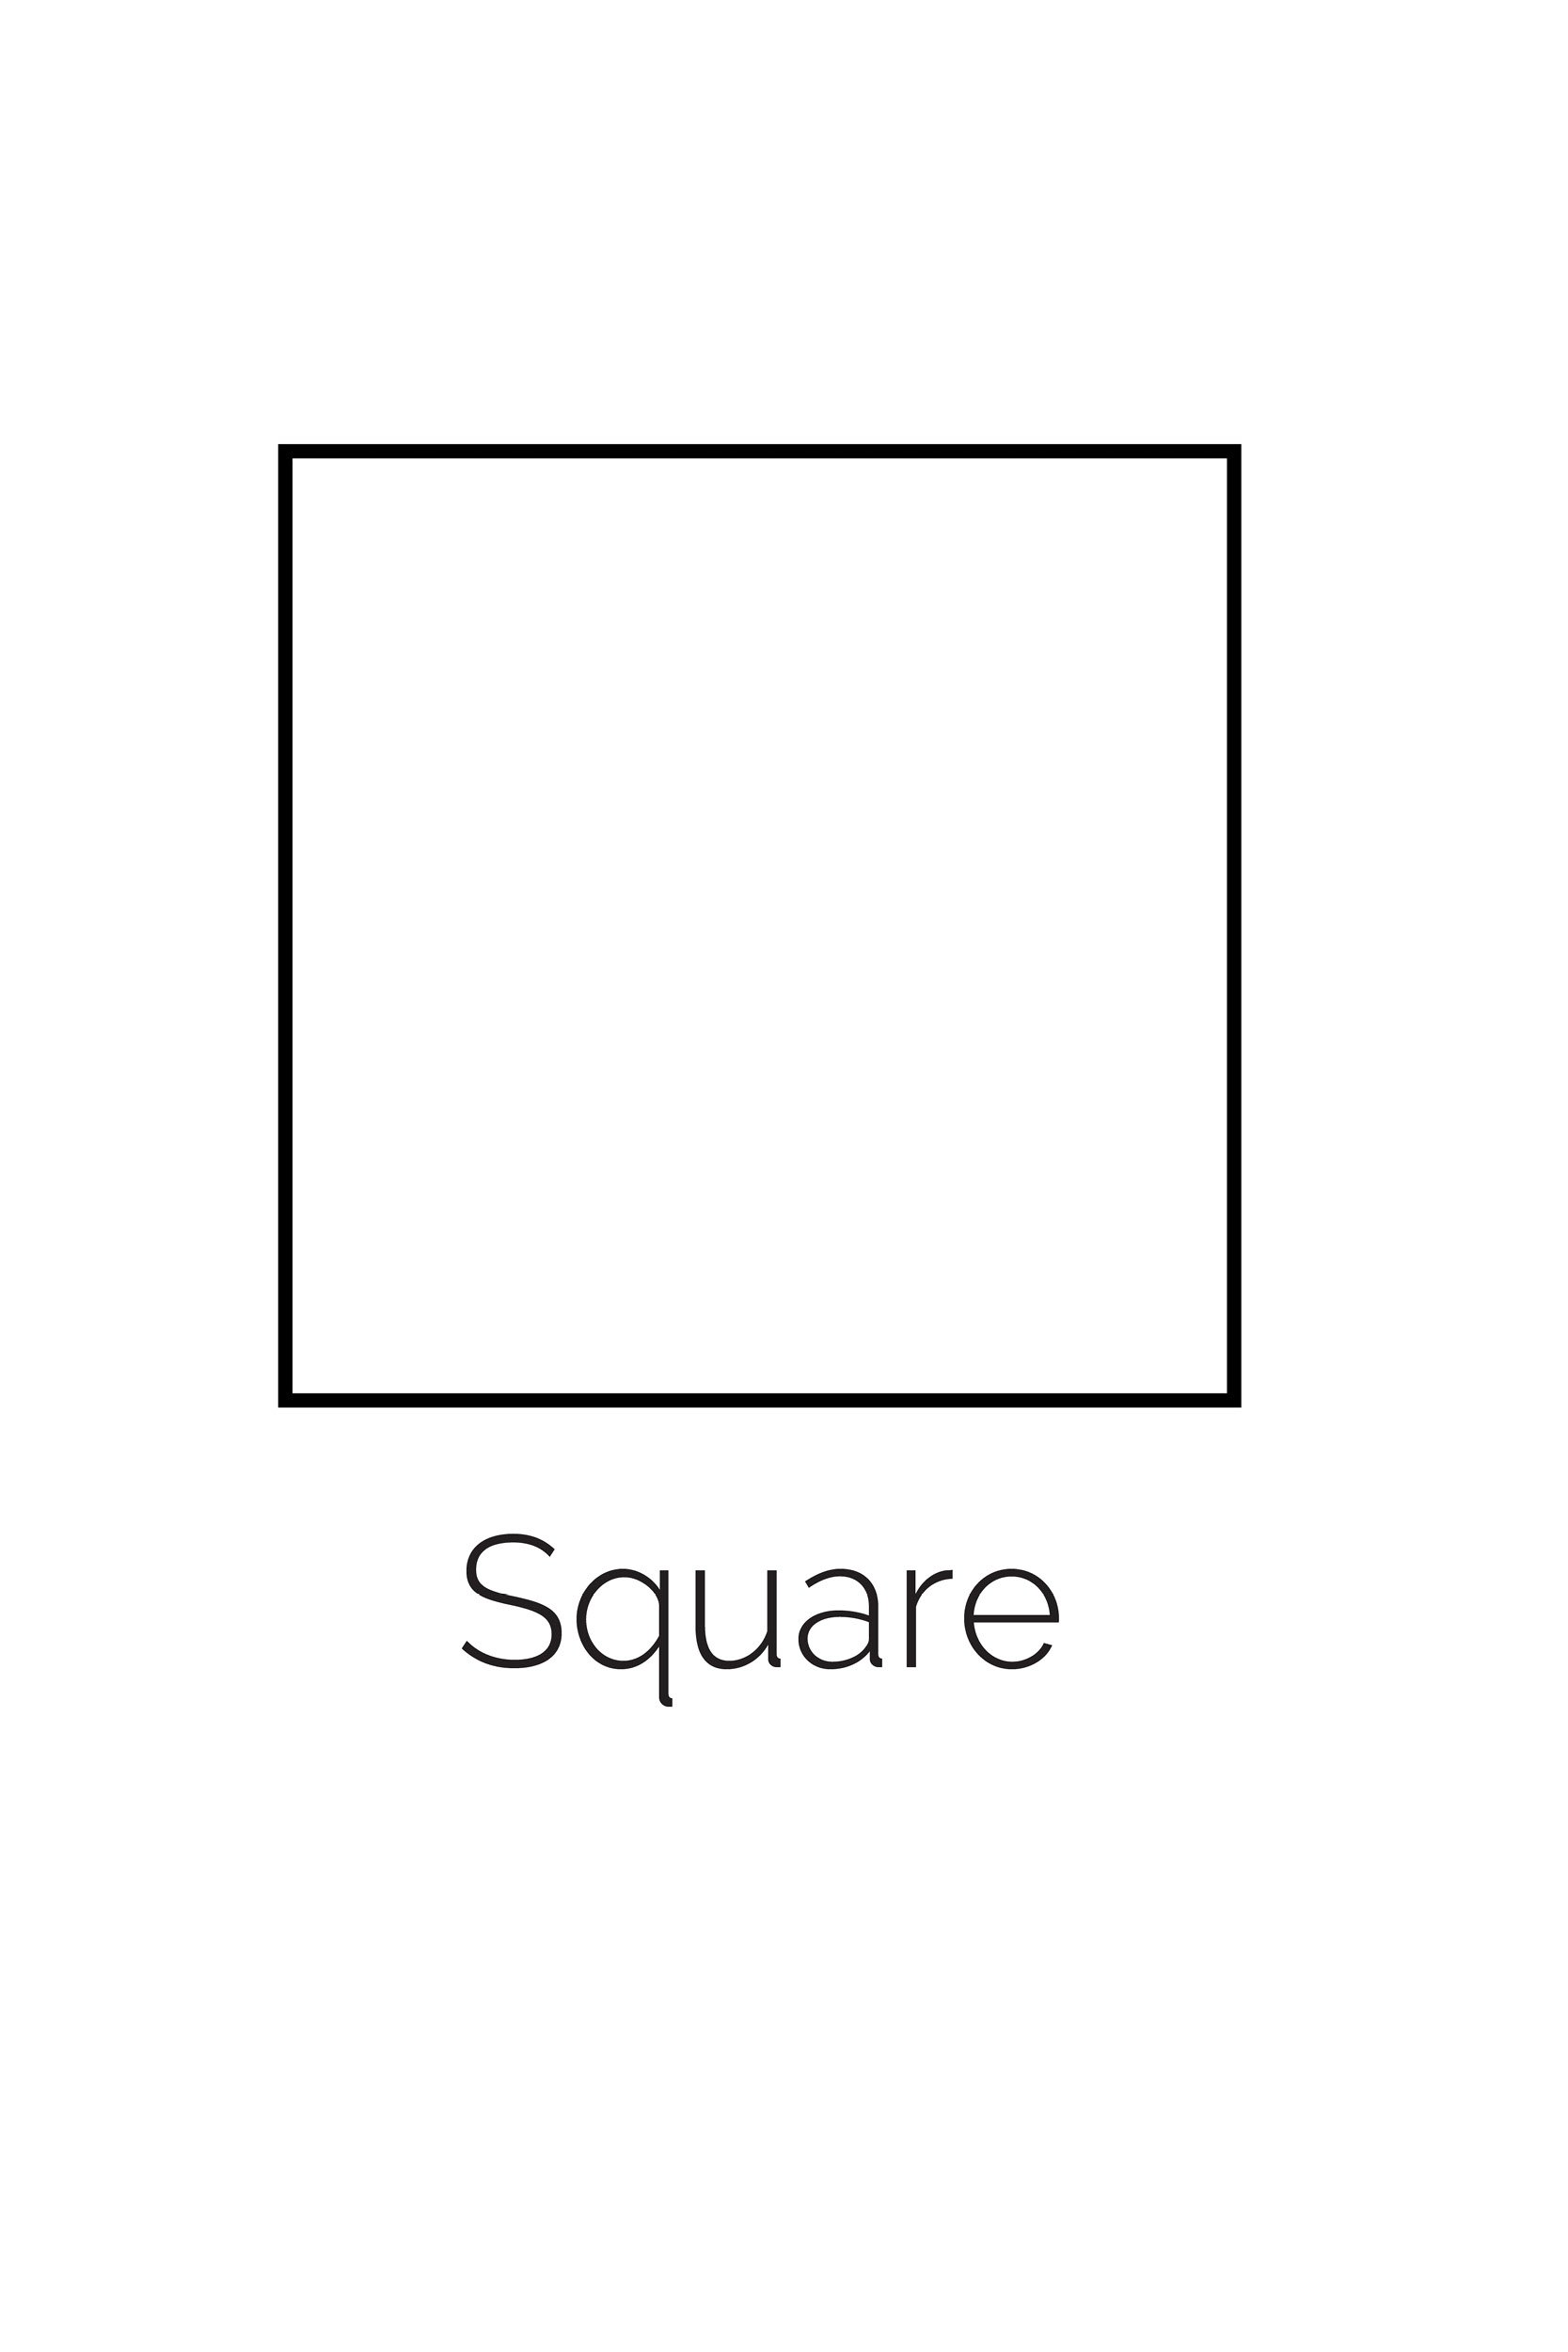 Free-Printable-Square-Shape.jpg